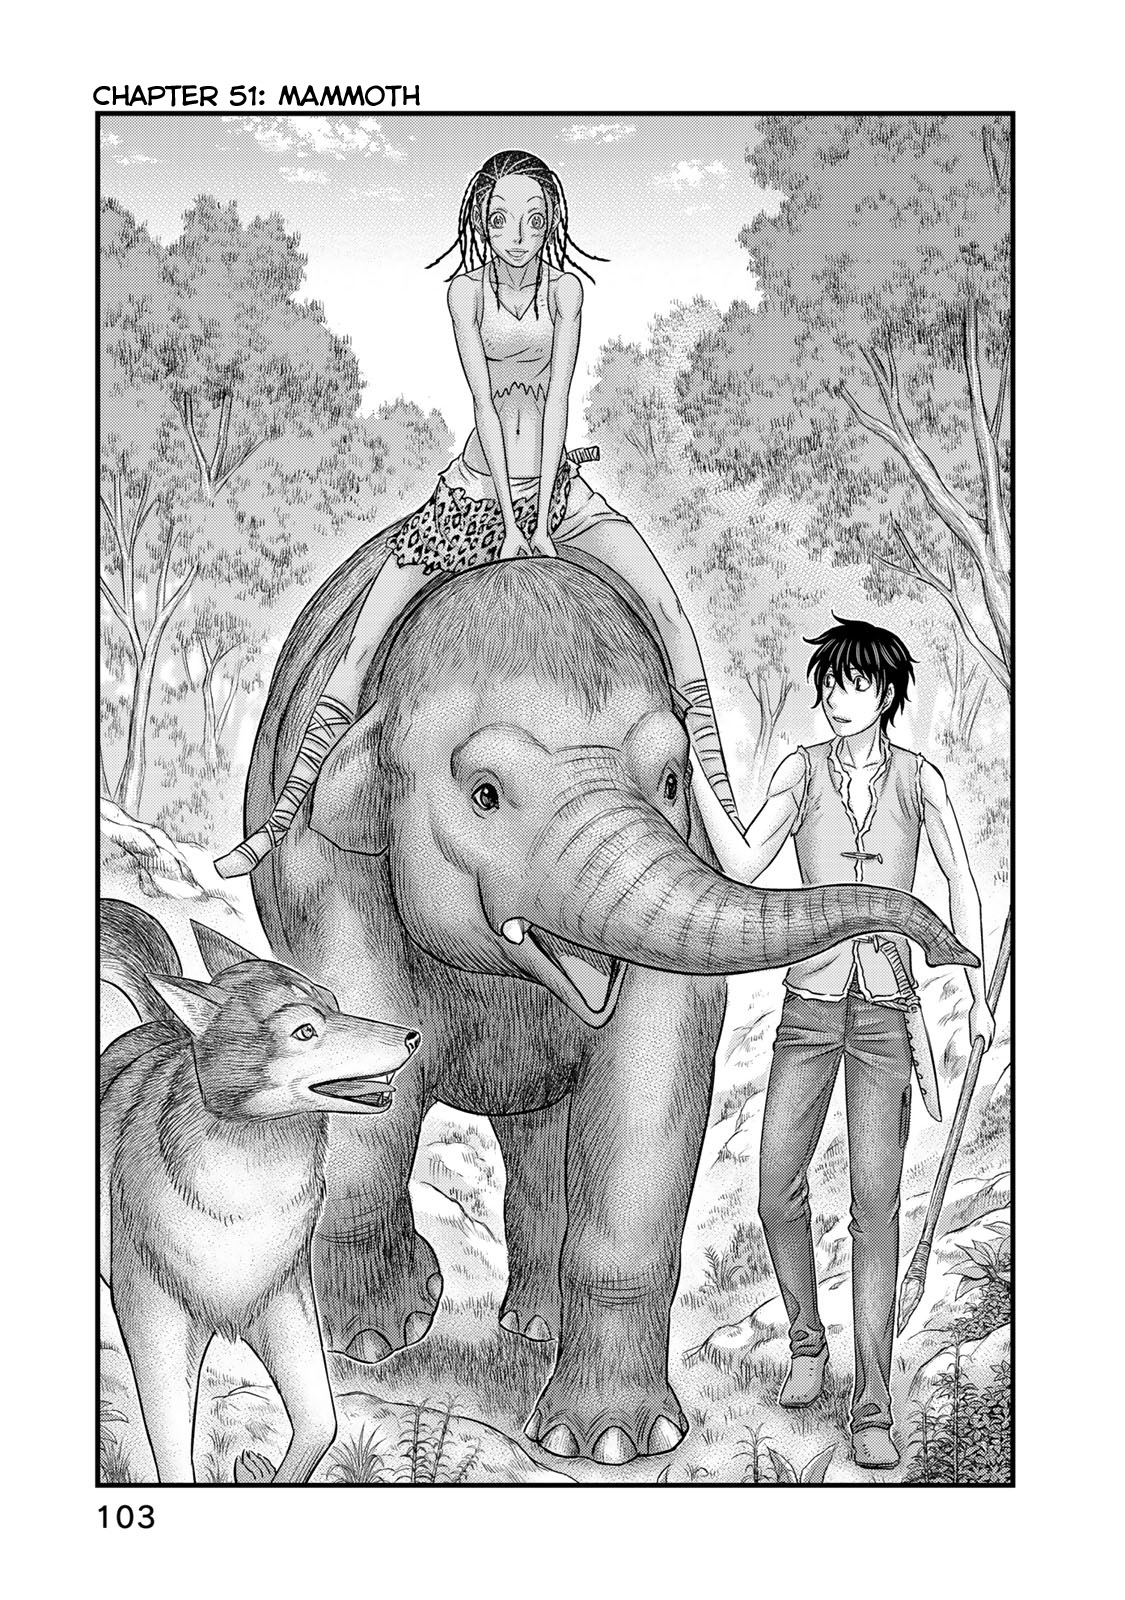 Sousei no Taiga Vol. 6 Ch. 51 Mammoth